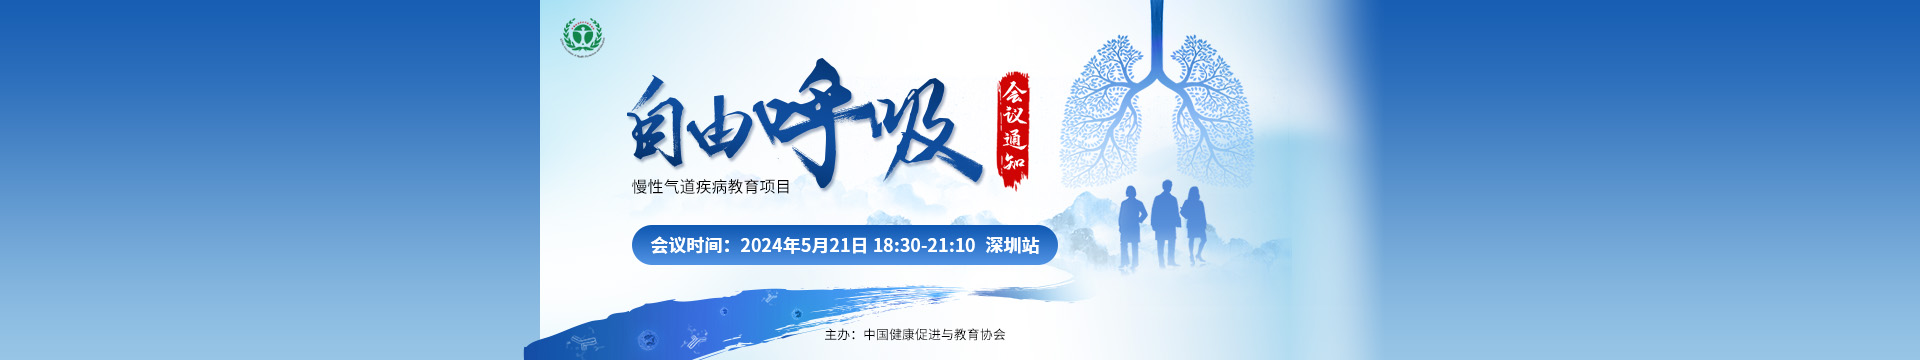 自由呼吸-慢性气道疾病教育项目-深圳站会议通知